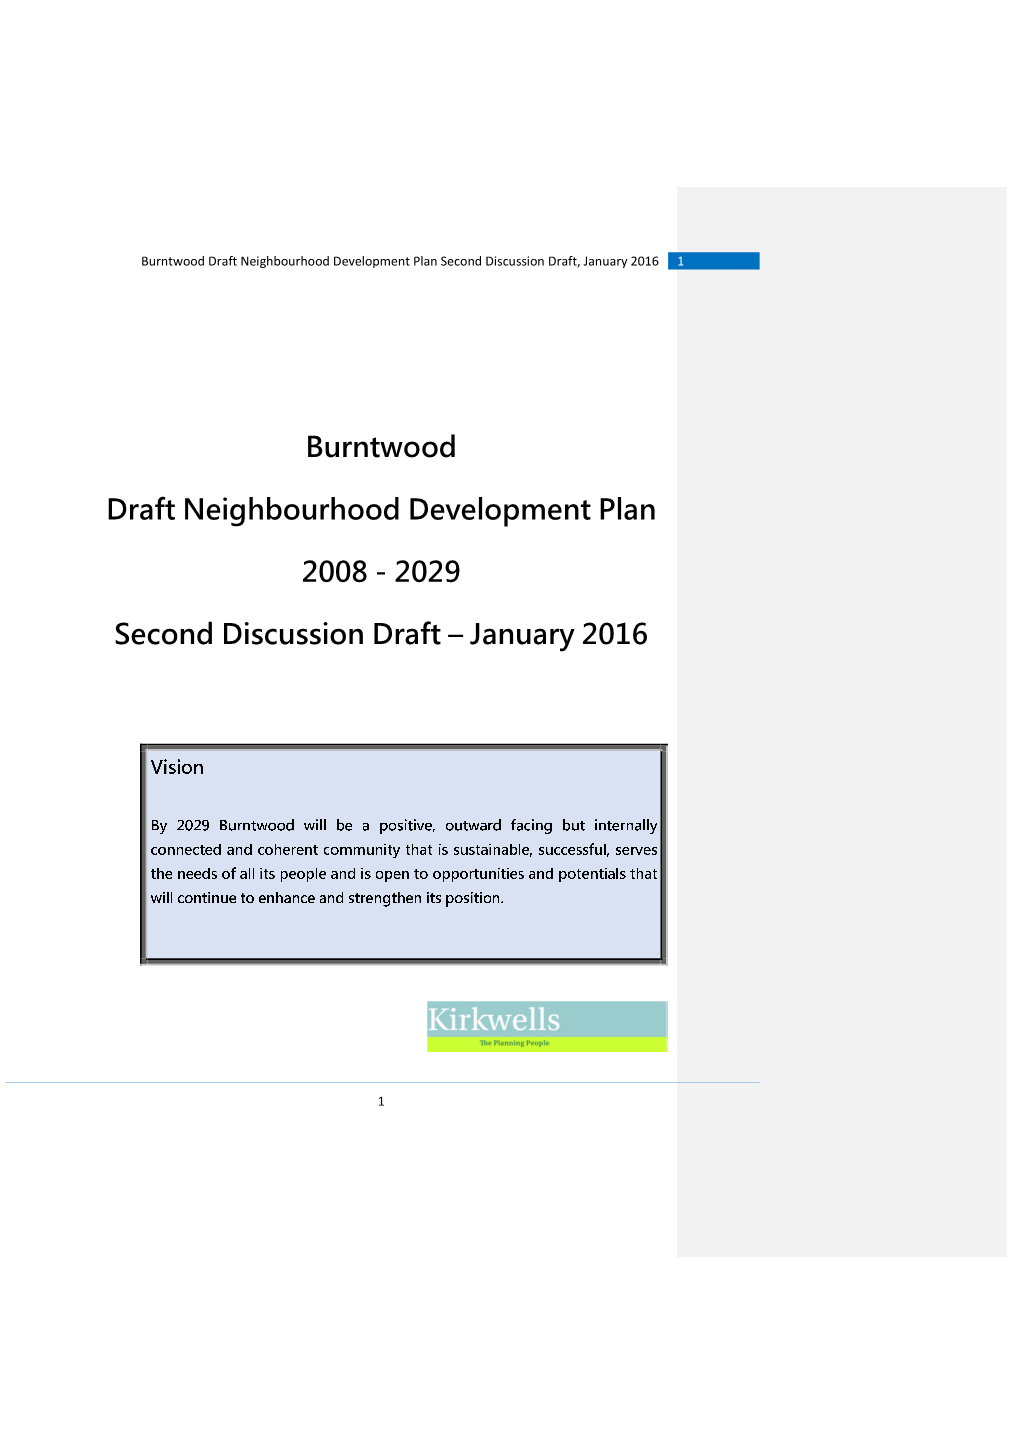 Consultation Document: Draft Neighbourhood Plan Amendment